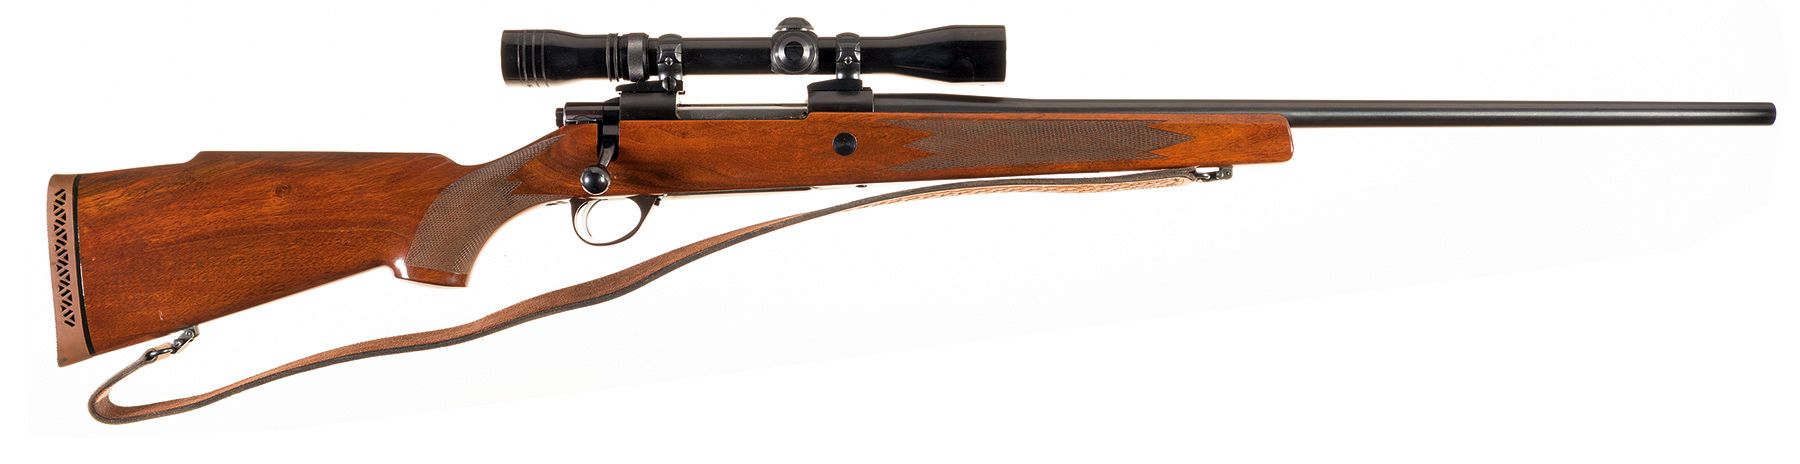 sako rifles by serial number